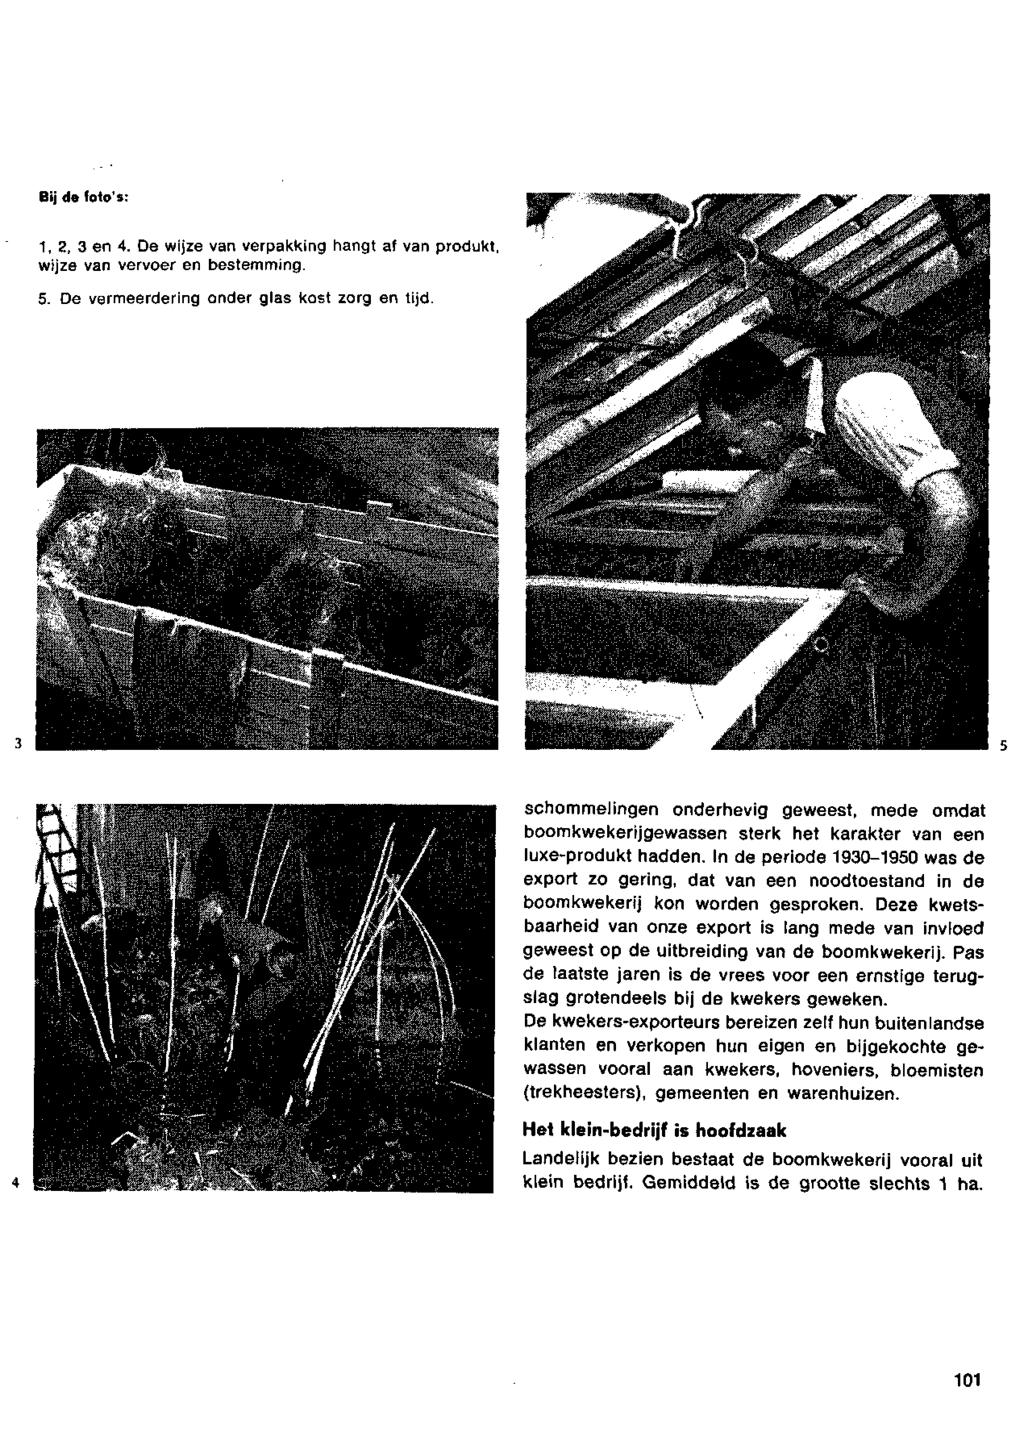 Bijdefoto's: L - lüil lui* a.*^ **. schommelingen onderhevig geweest, mede omdat boomkwekerijgewassen sterk het karakter van een luxe-produkt hadden.